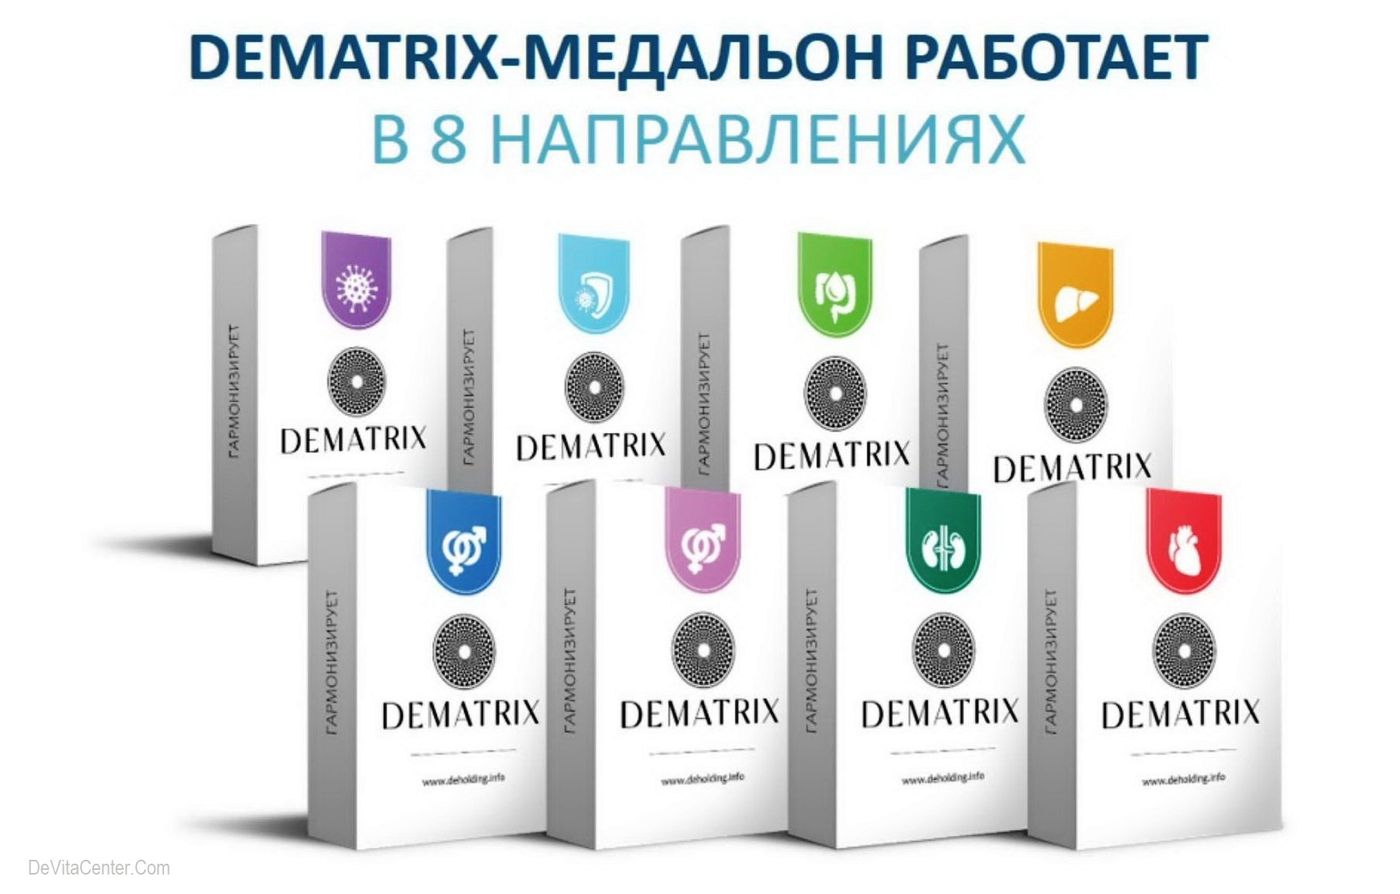 DeMatrix